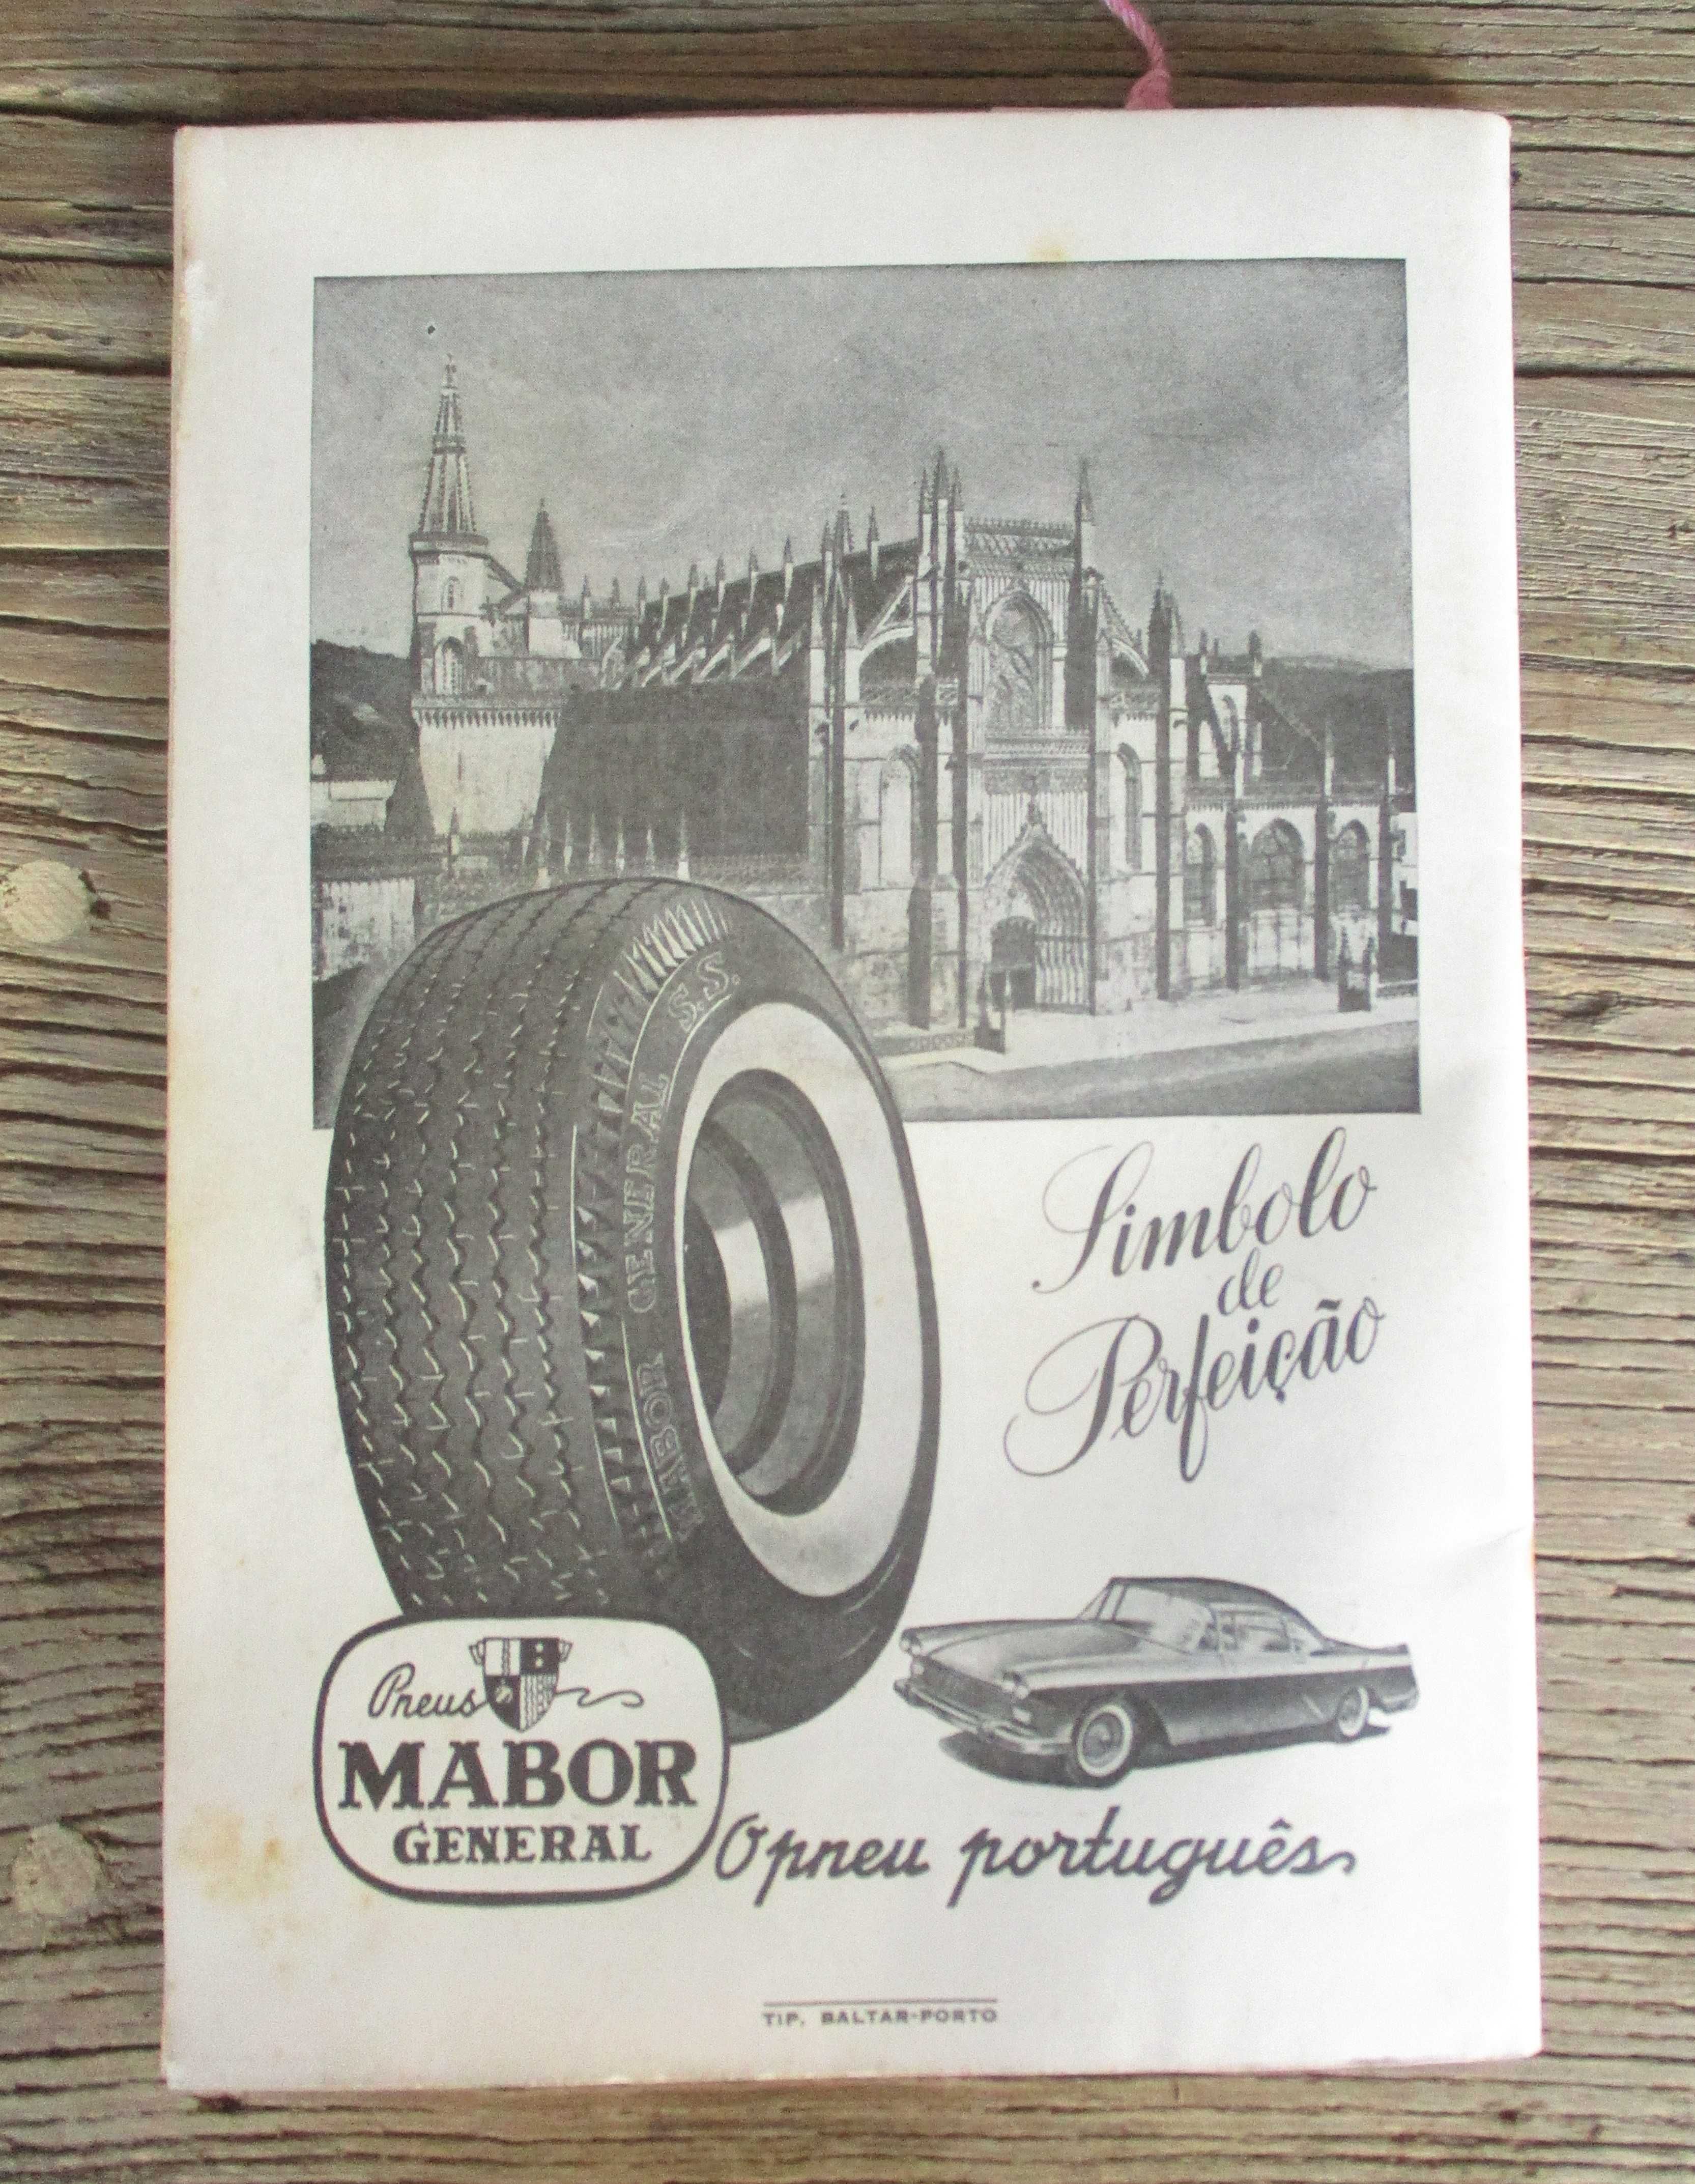 Raro Programa VI Circuito Automóvel de Vila do Conde de 1960